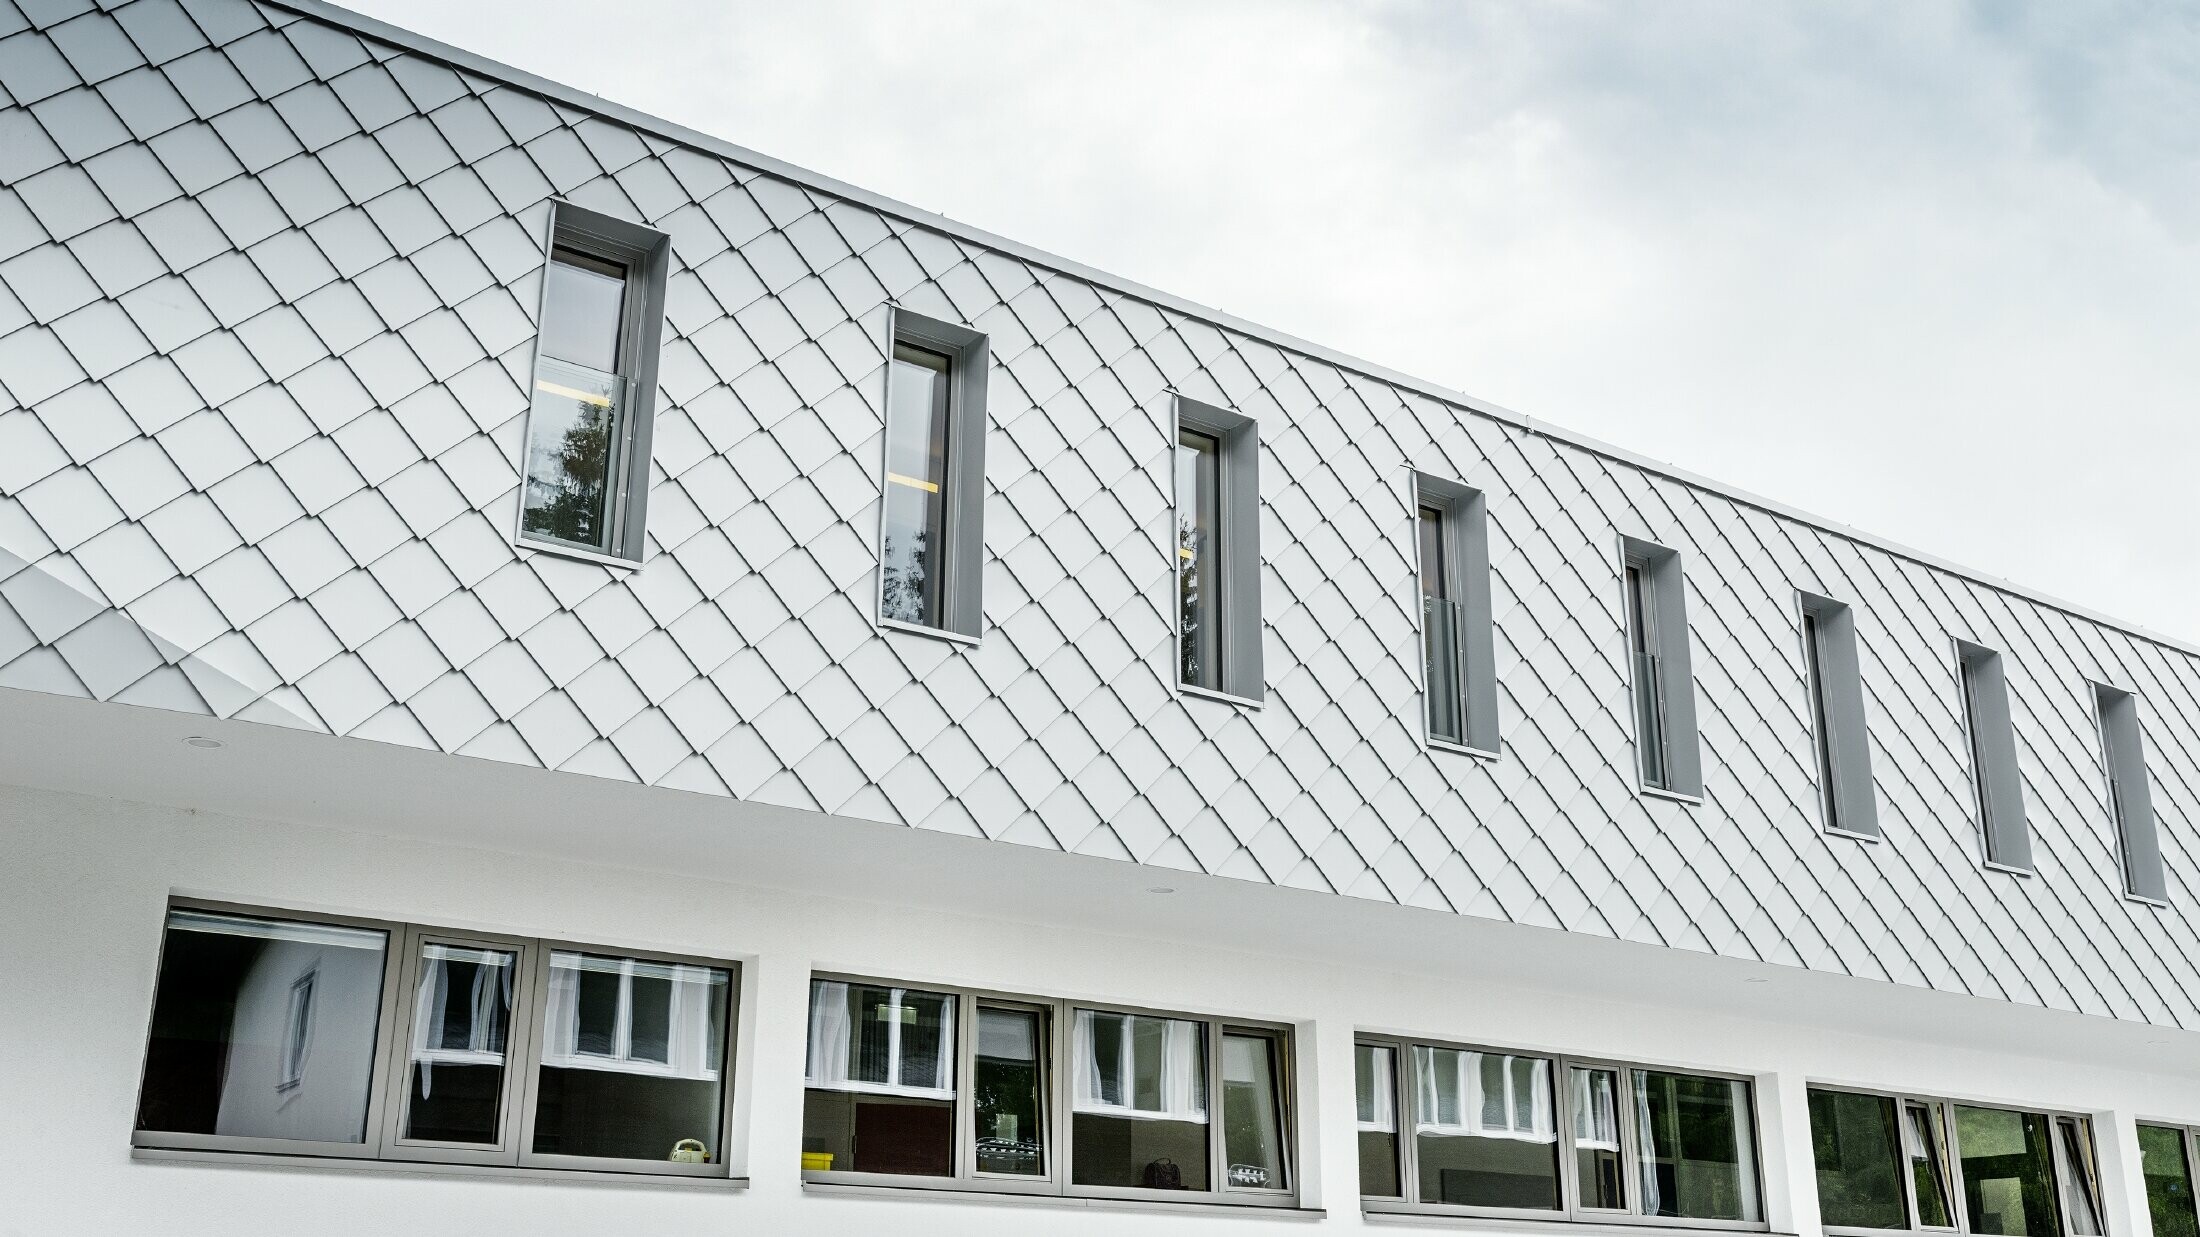 Nybygget børnehave i Kaprunn med en moderne aluminiumsfacade med PREFA-vægrombe i Prefa-hvid